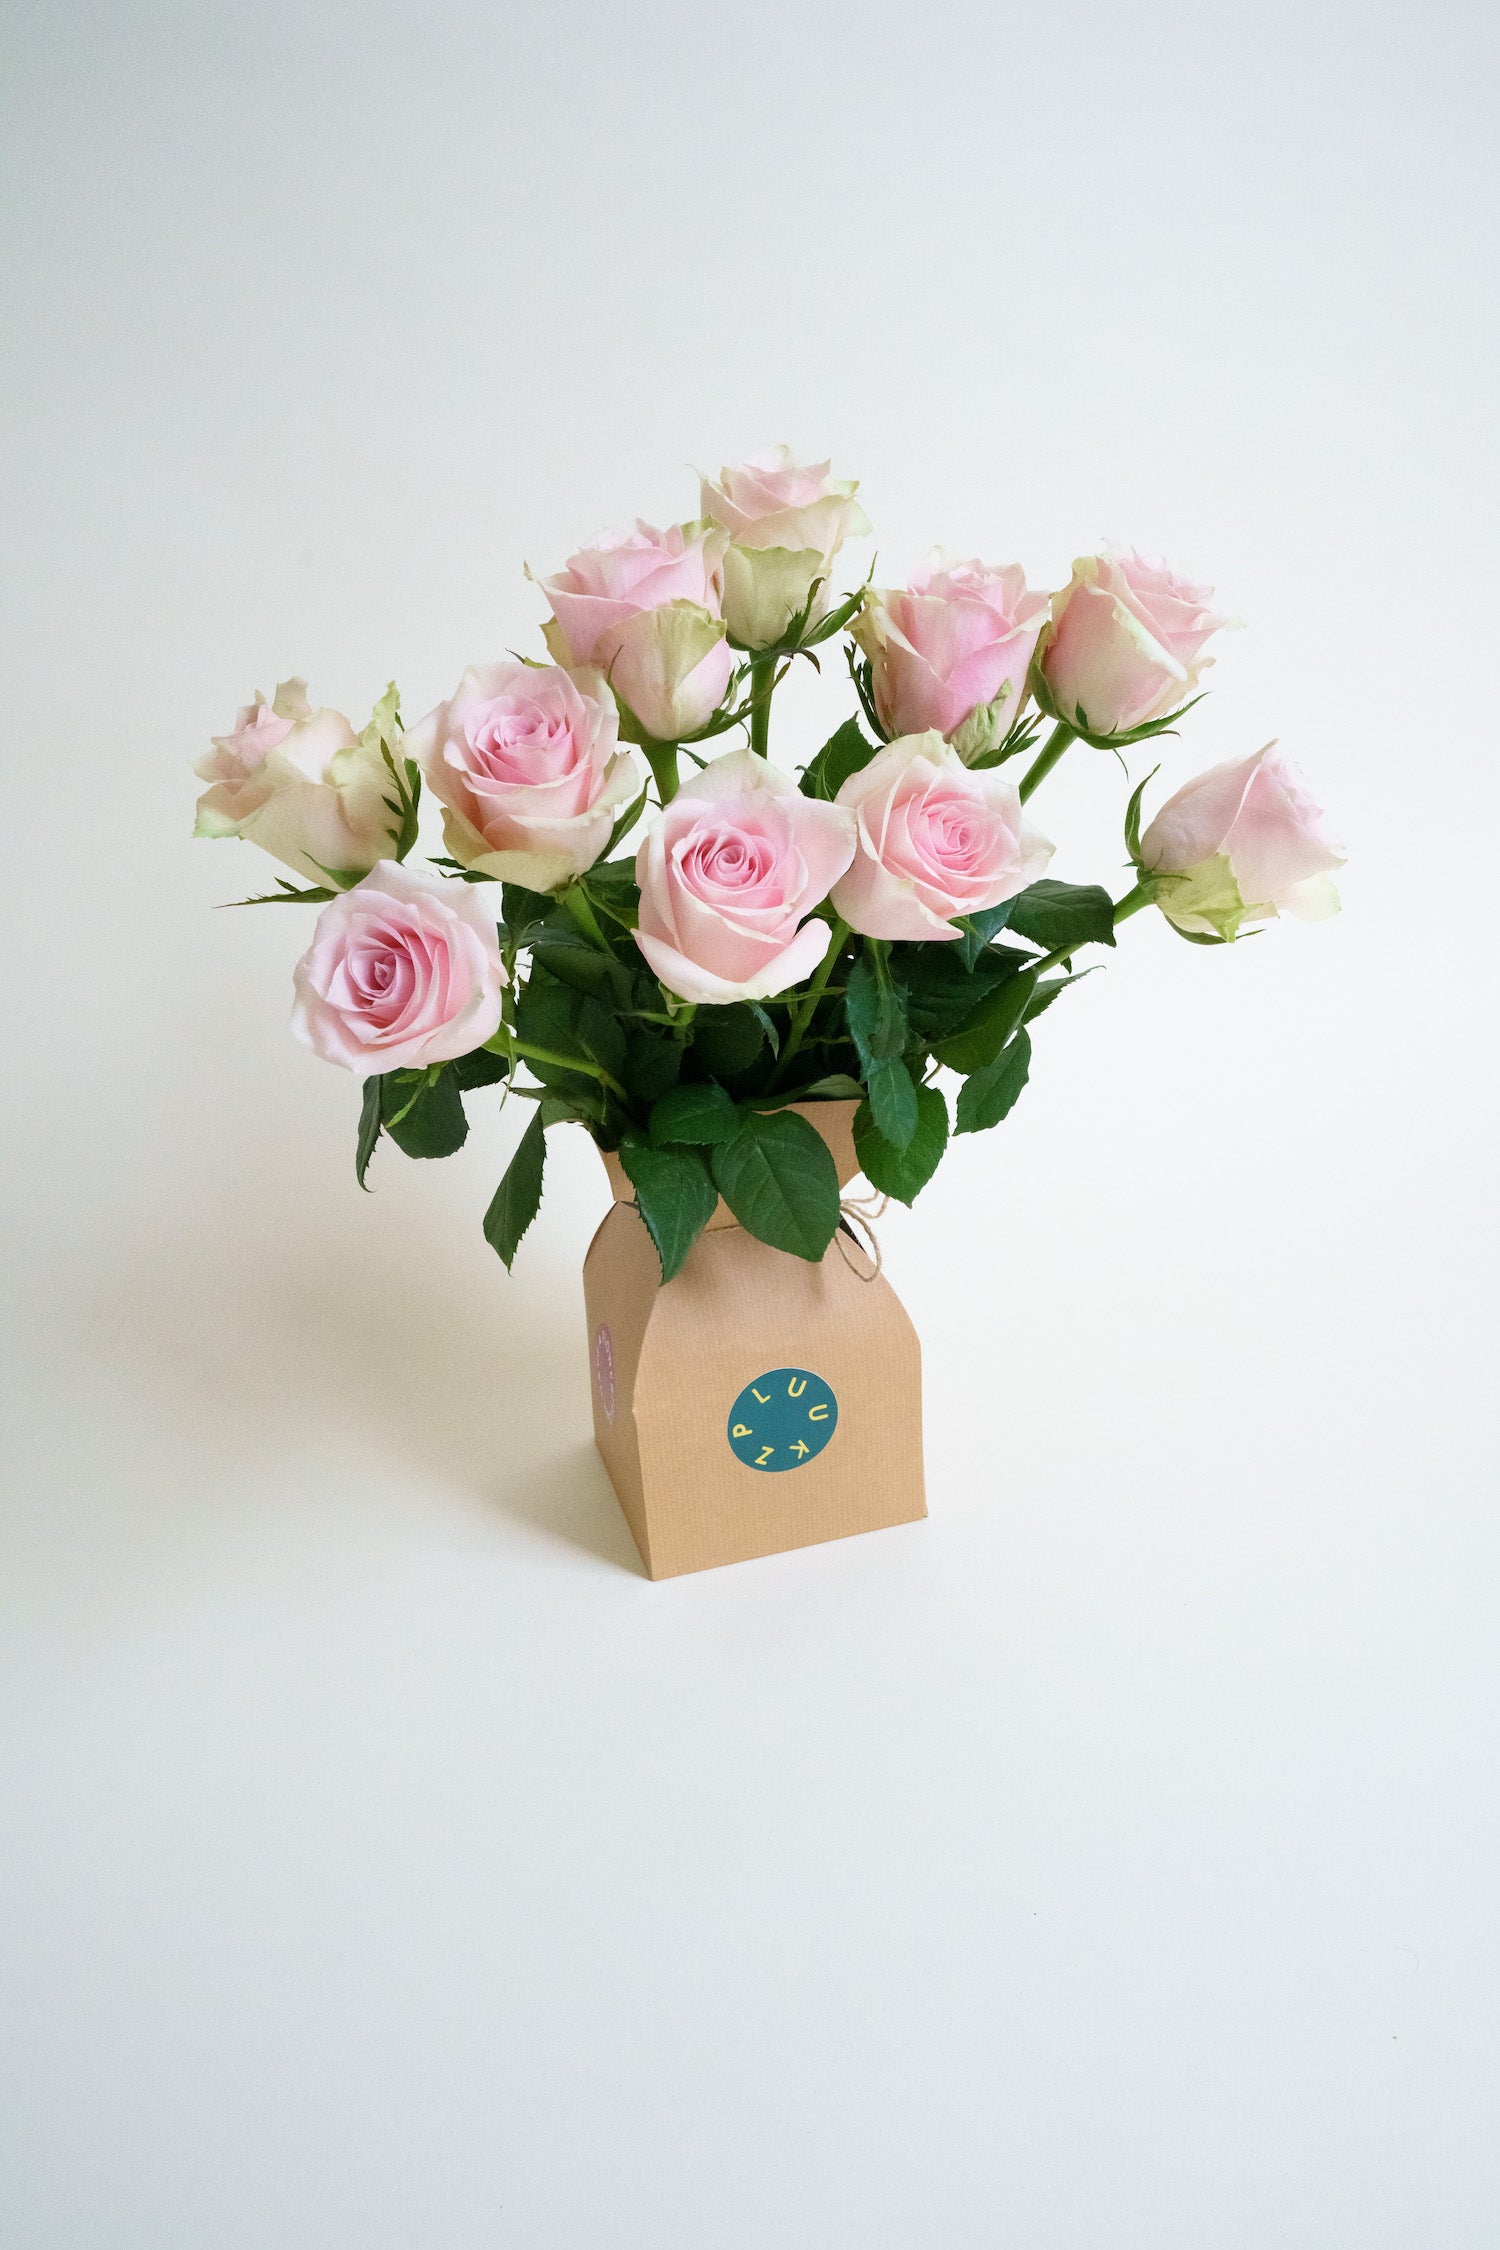 Plukverse bloemen door de brievenbus laten bezorgen? Rozen worden altijd goed ontvangen. Wie verras jij?